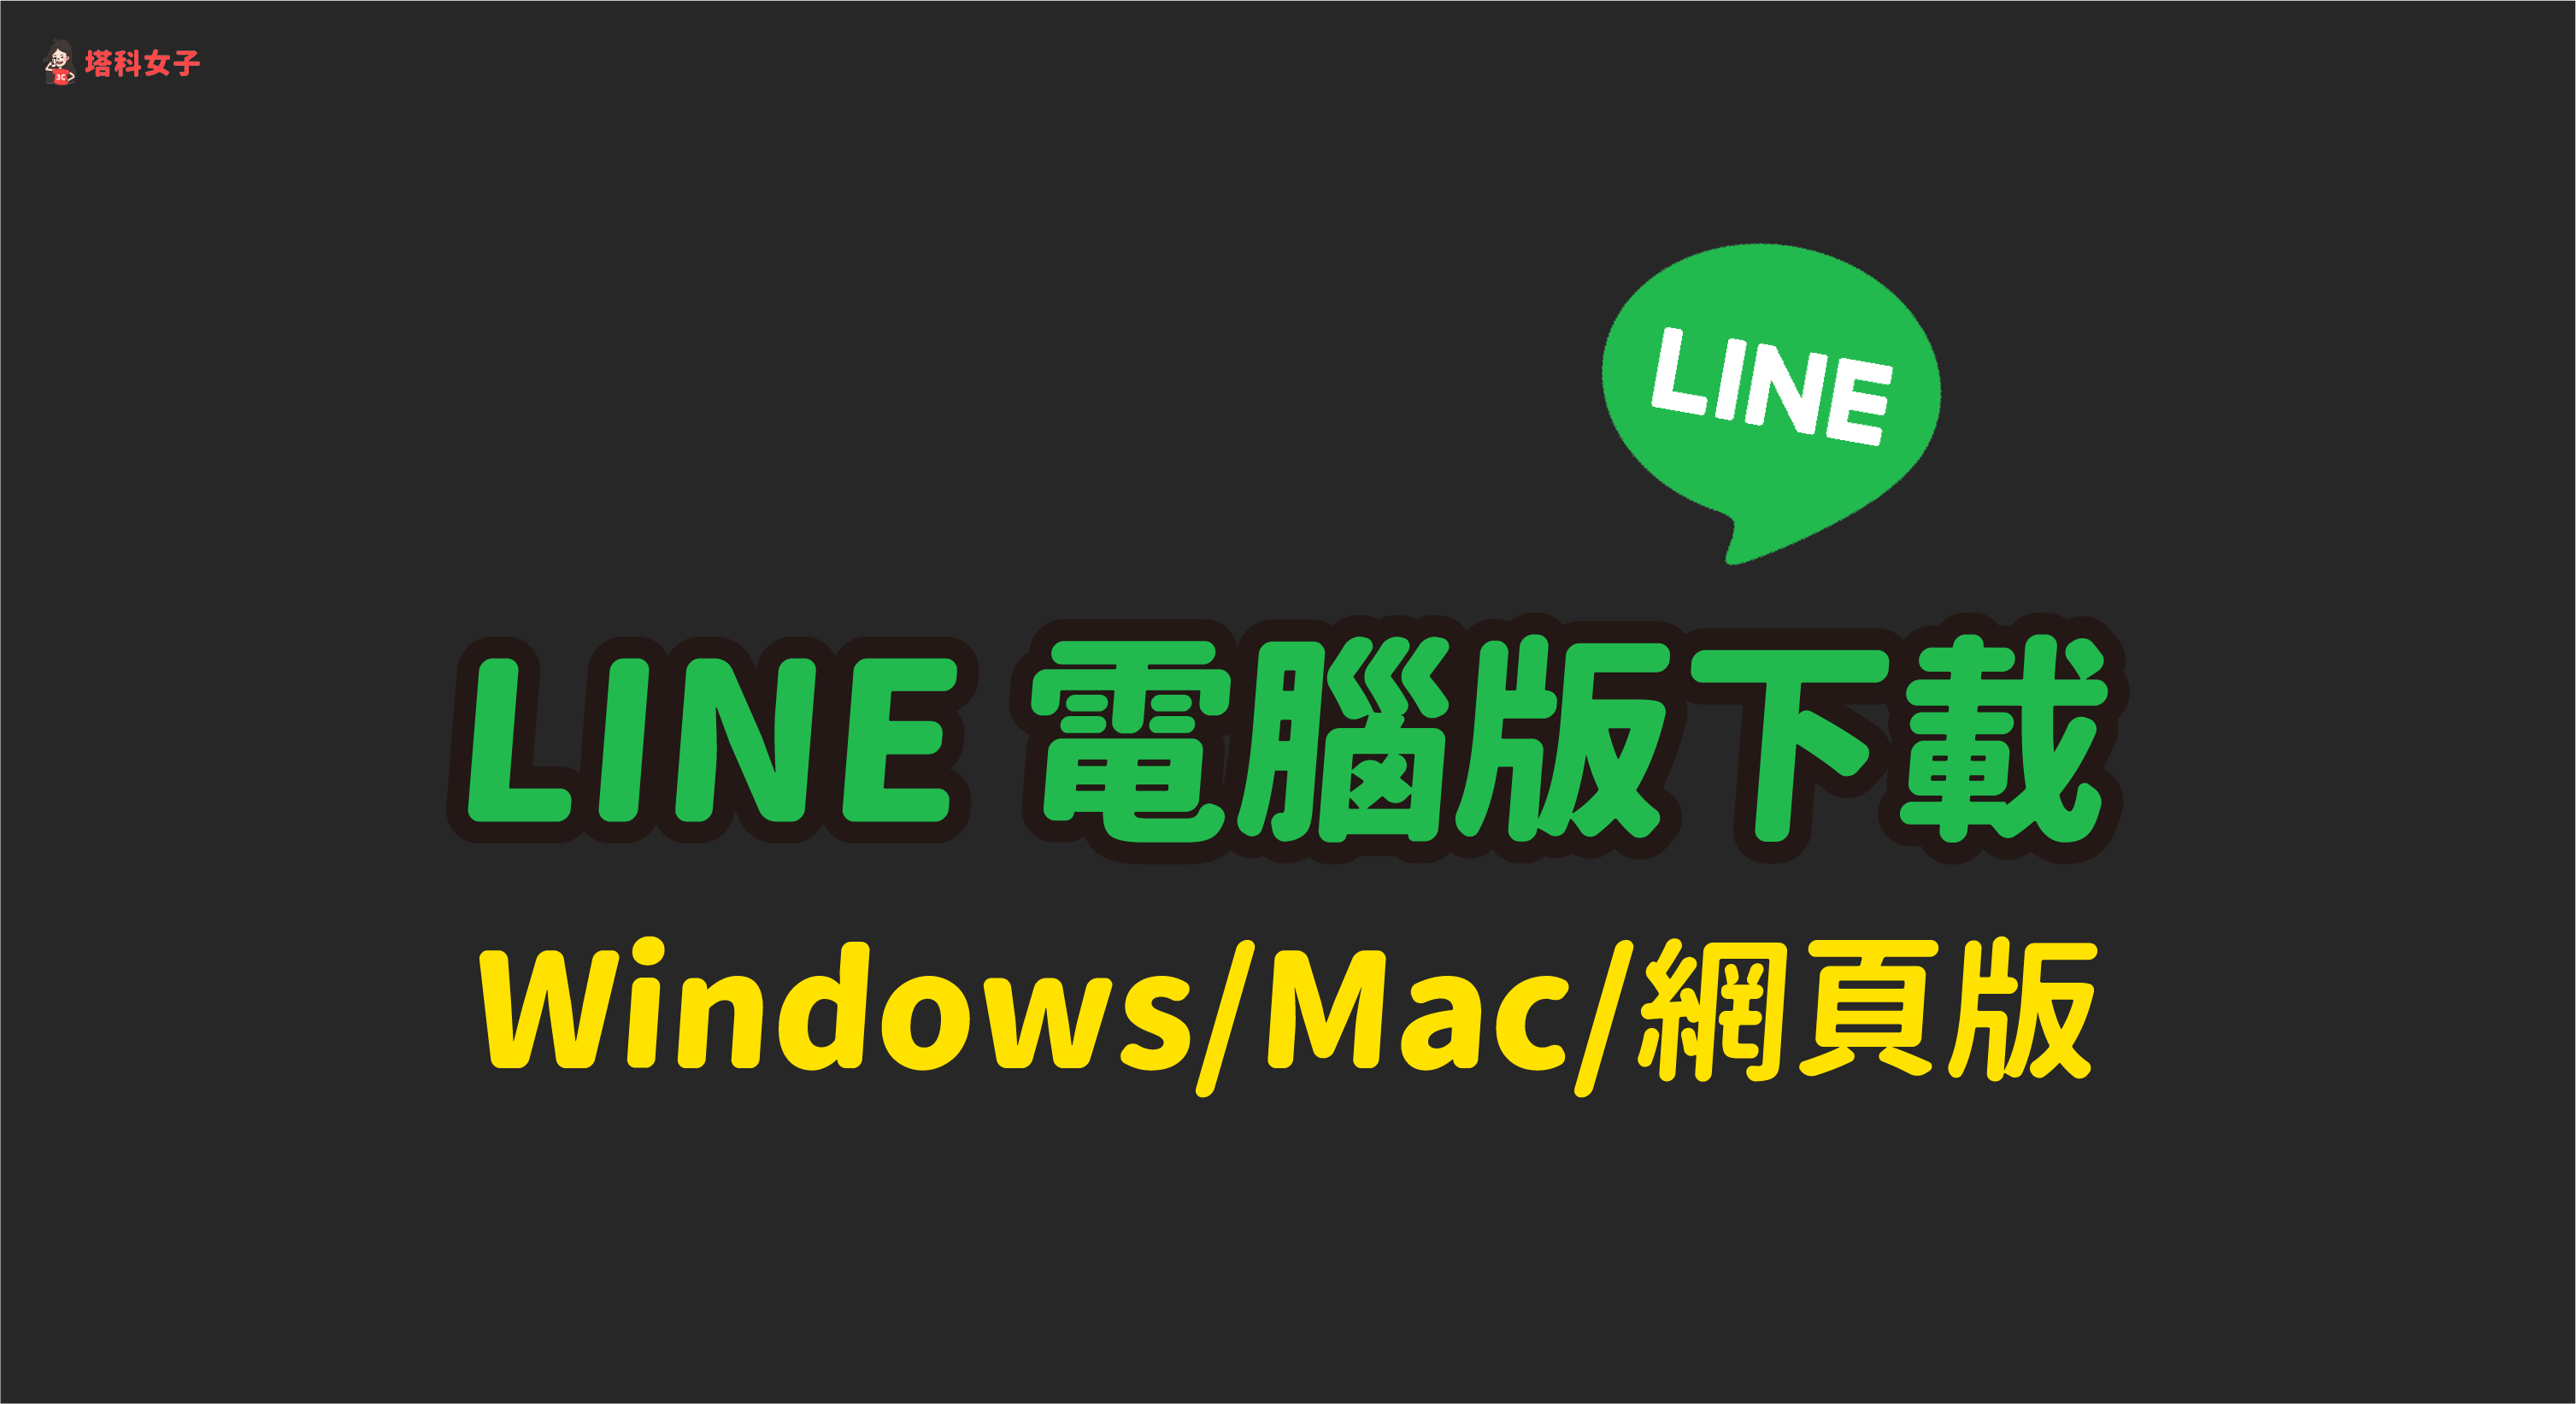 23最新line 電腦版下載 Line Windows Line Mac 官方載點line 中文版下載點 塔科女子